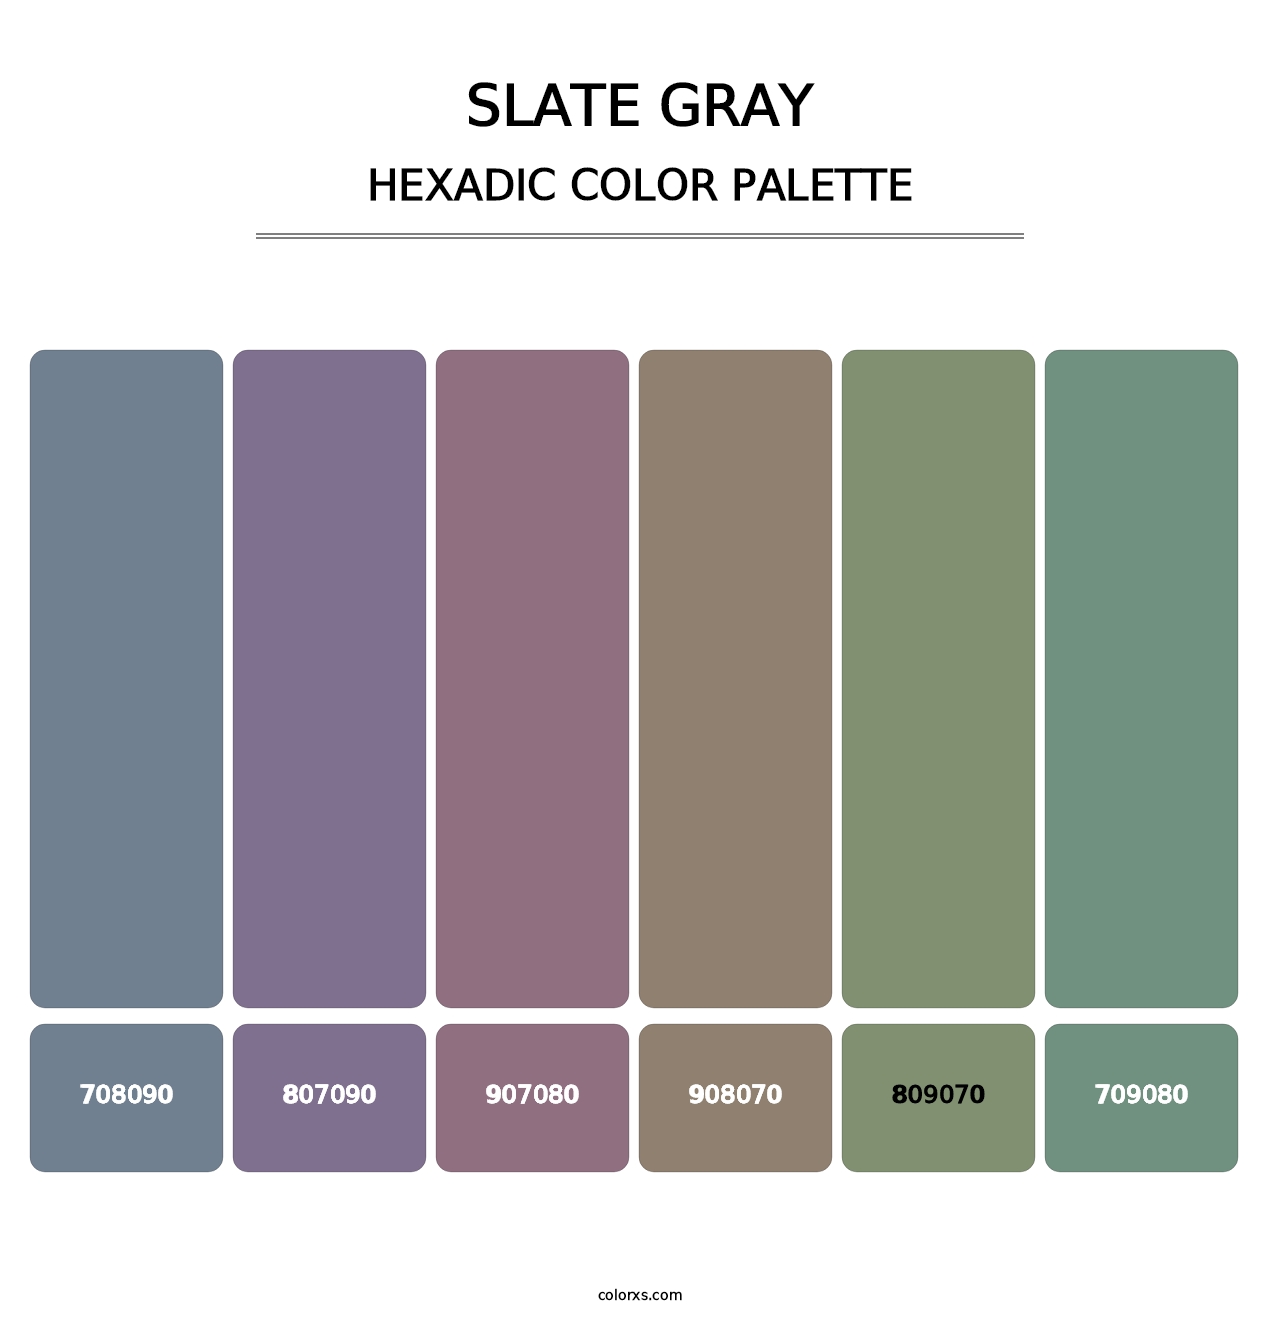 Slate Gray - Hexadic Color Palette